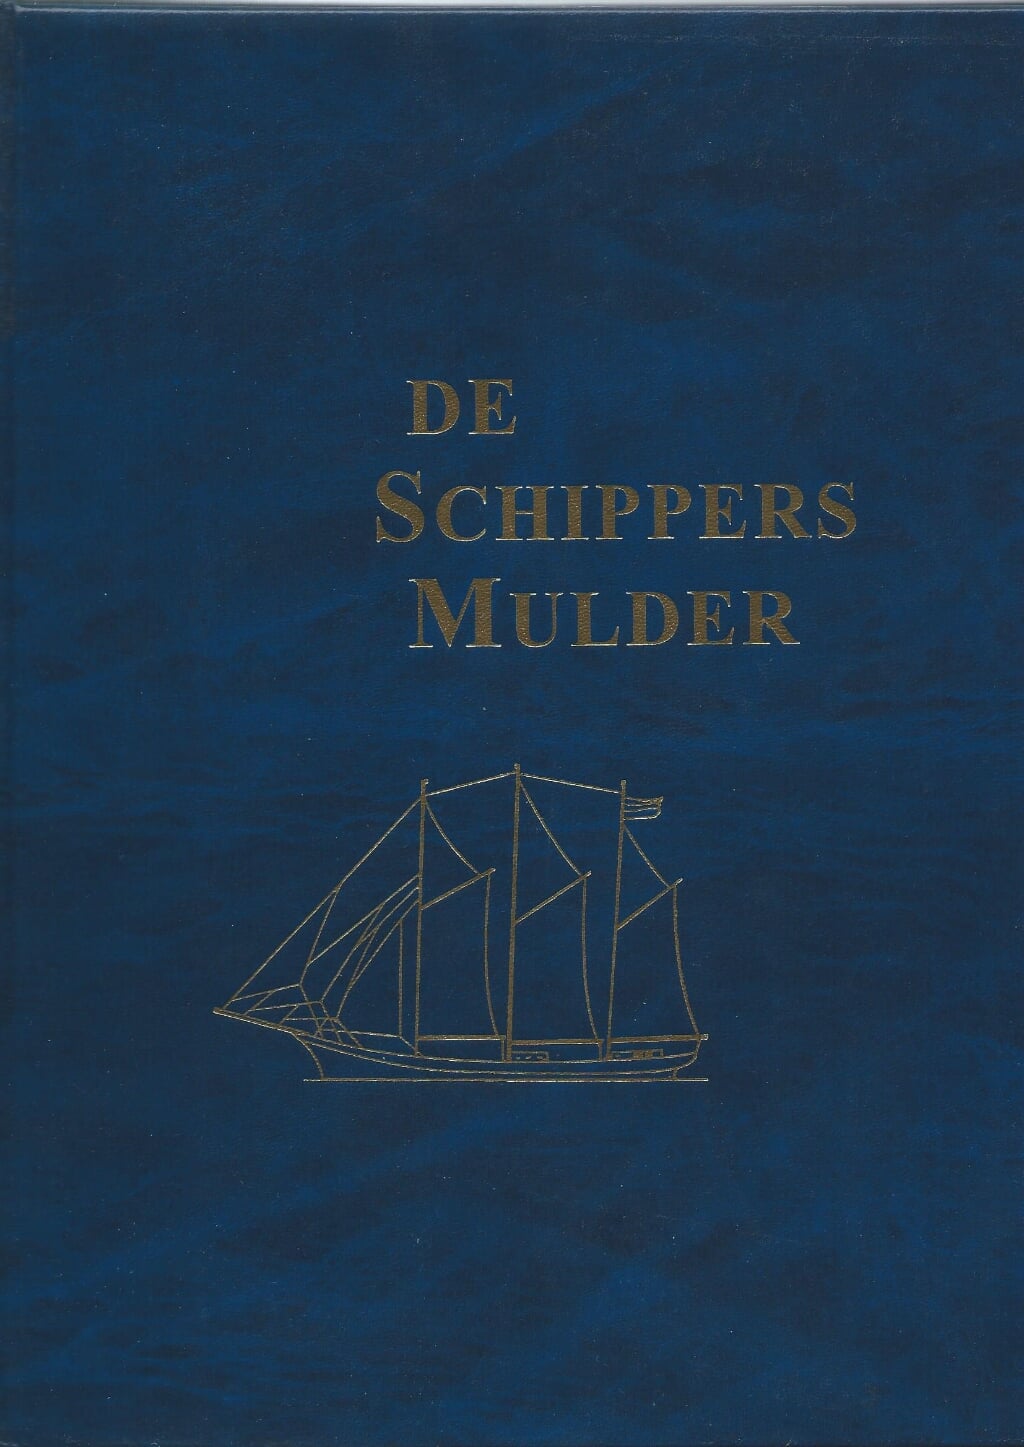 DE SCHIPPERS MULDER